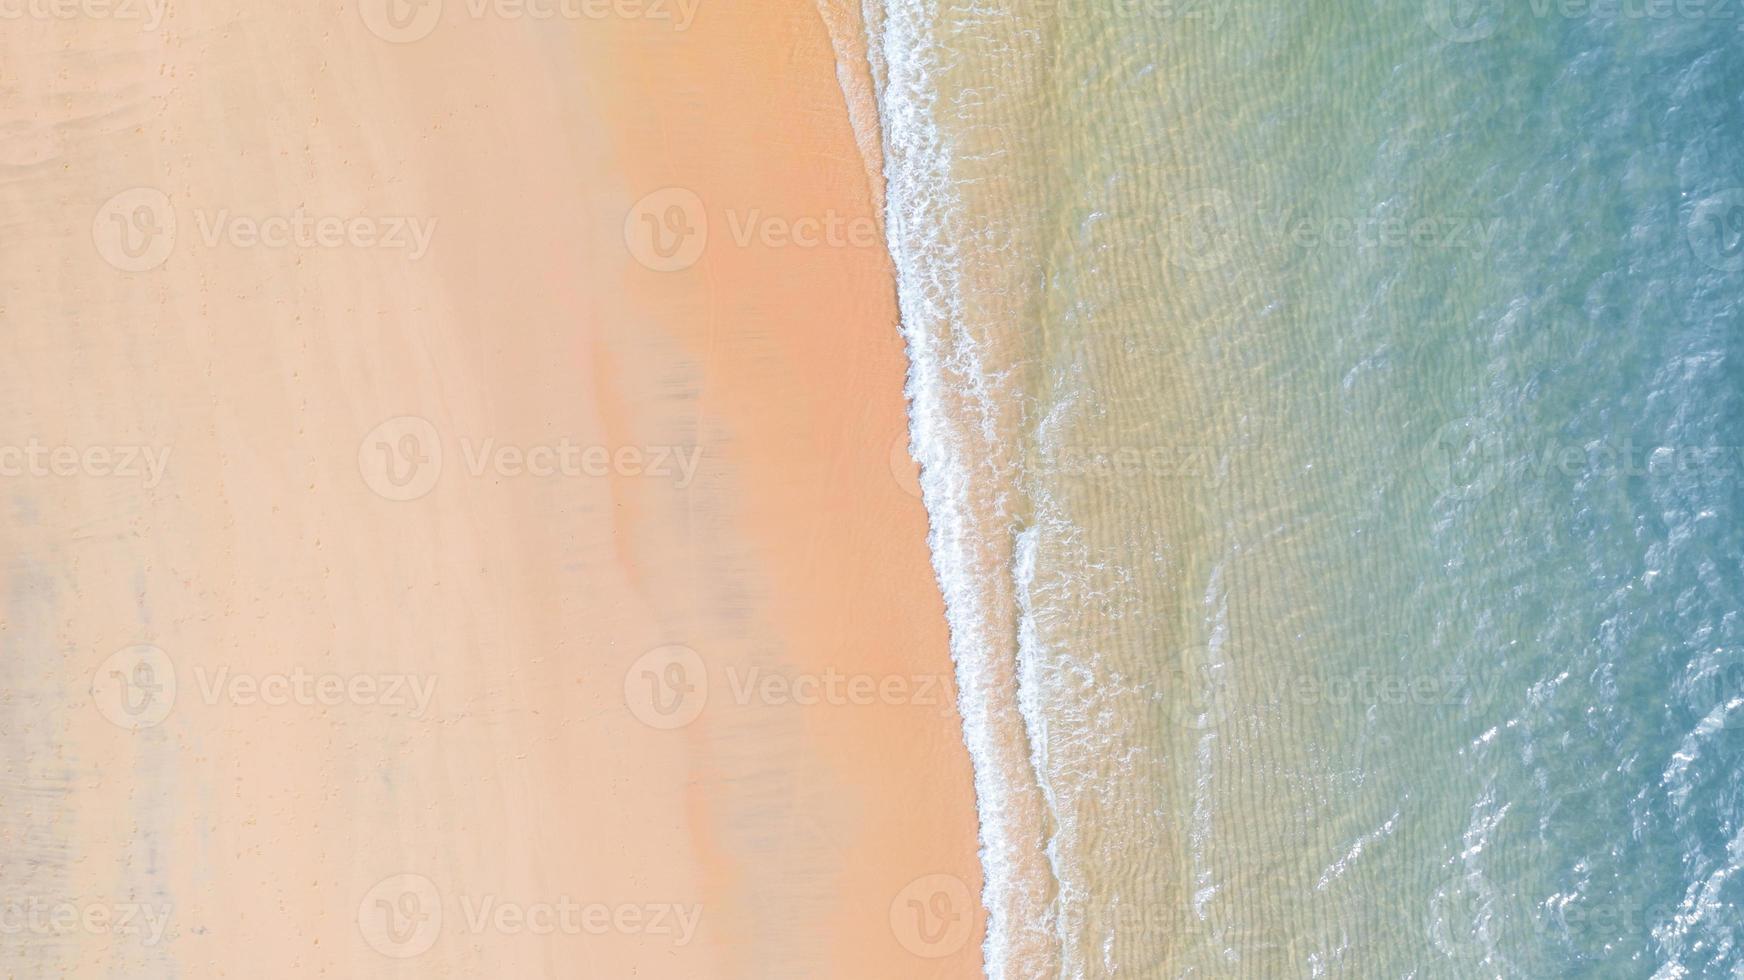 vista aerea della spiaggia con acqua blu smeraldo ombra e schiuma d'onda sul mare tropicale tropical foto